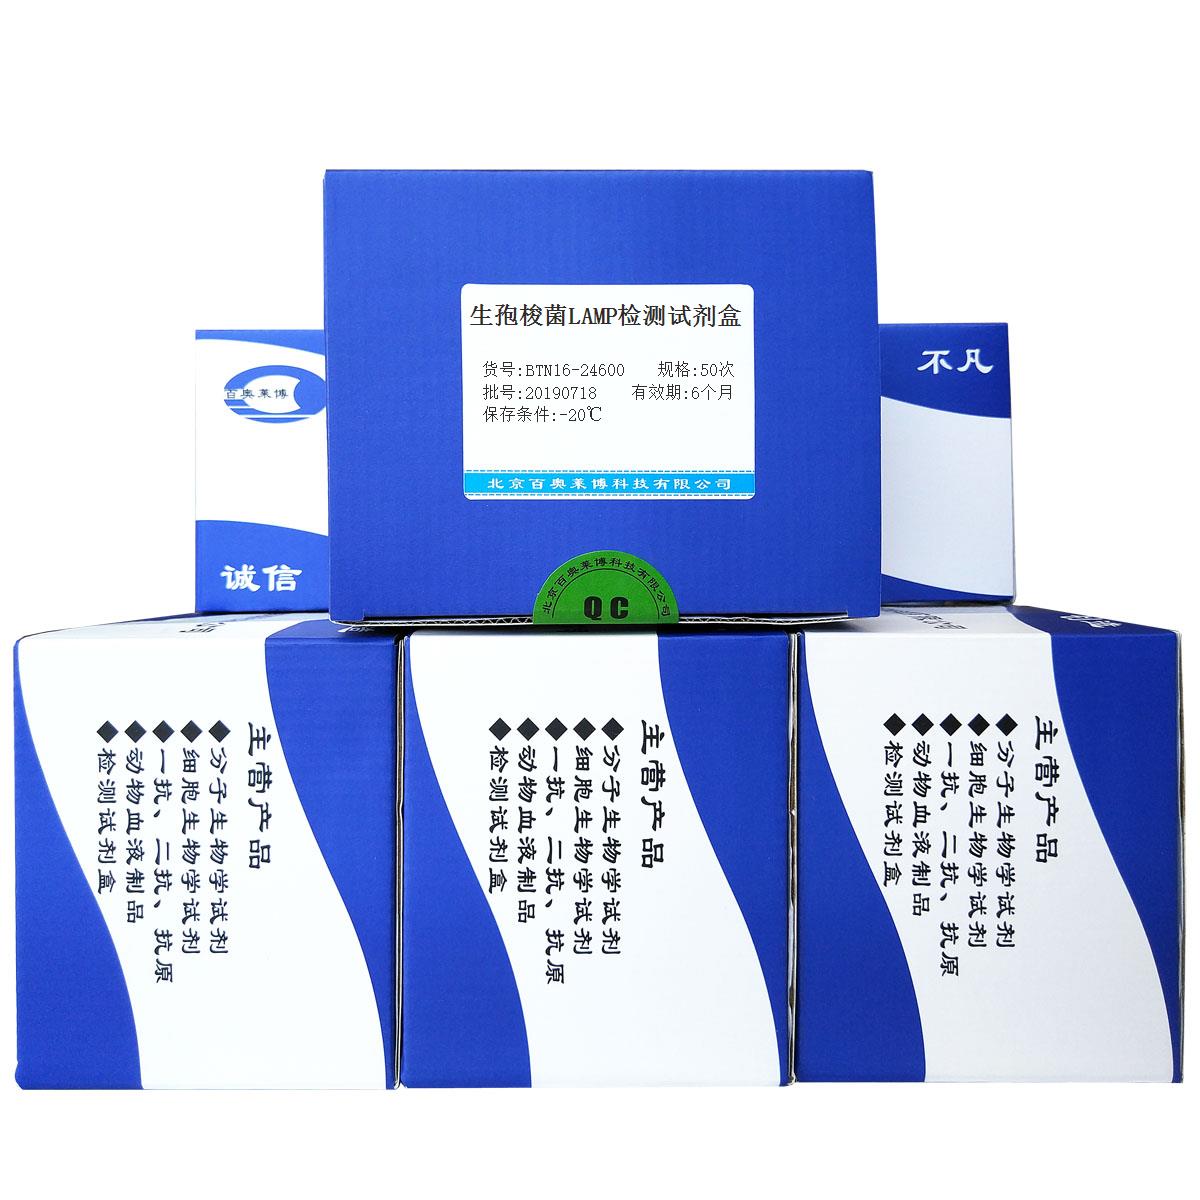 生孢梭菌LAMP检测试剂盒北京供应商